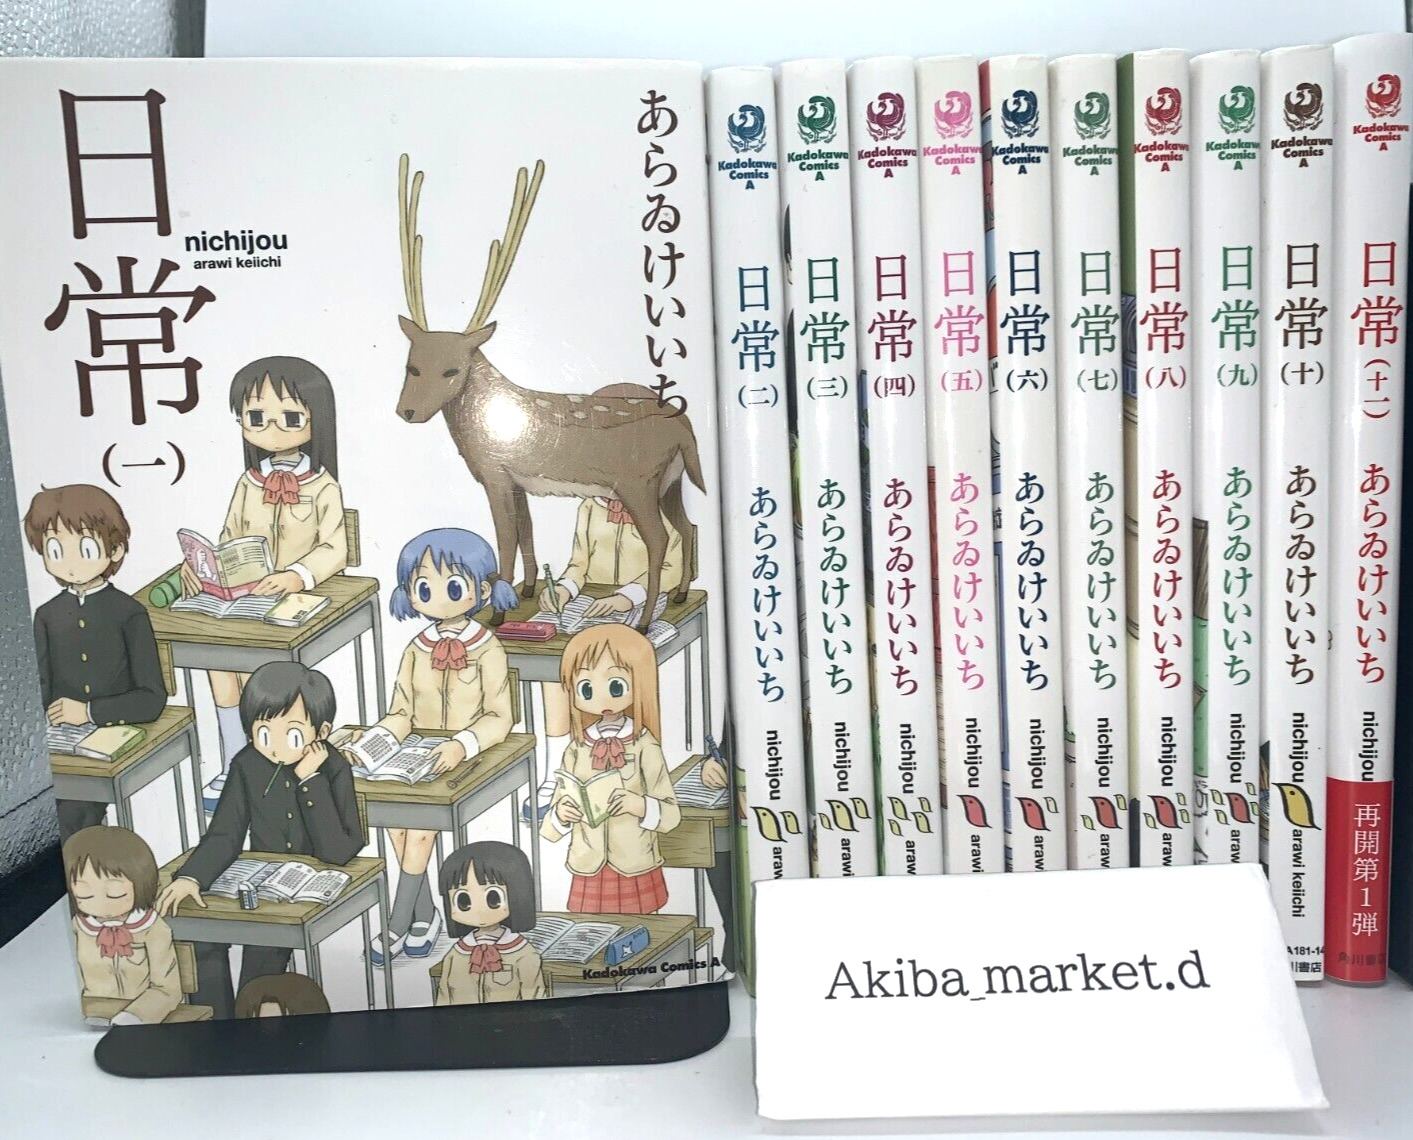 Nichijou Vol.1-11 Latest Full set Japanese language Manga Comics Kyoto animation